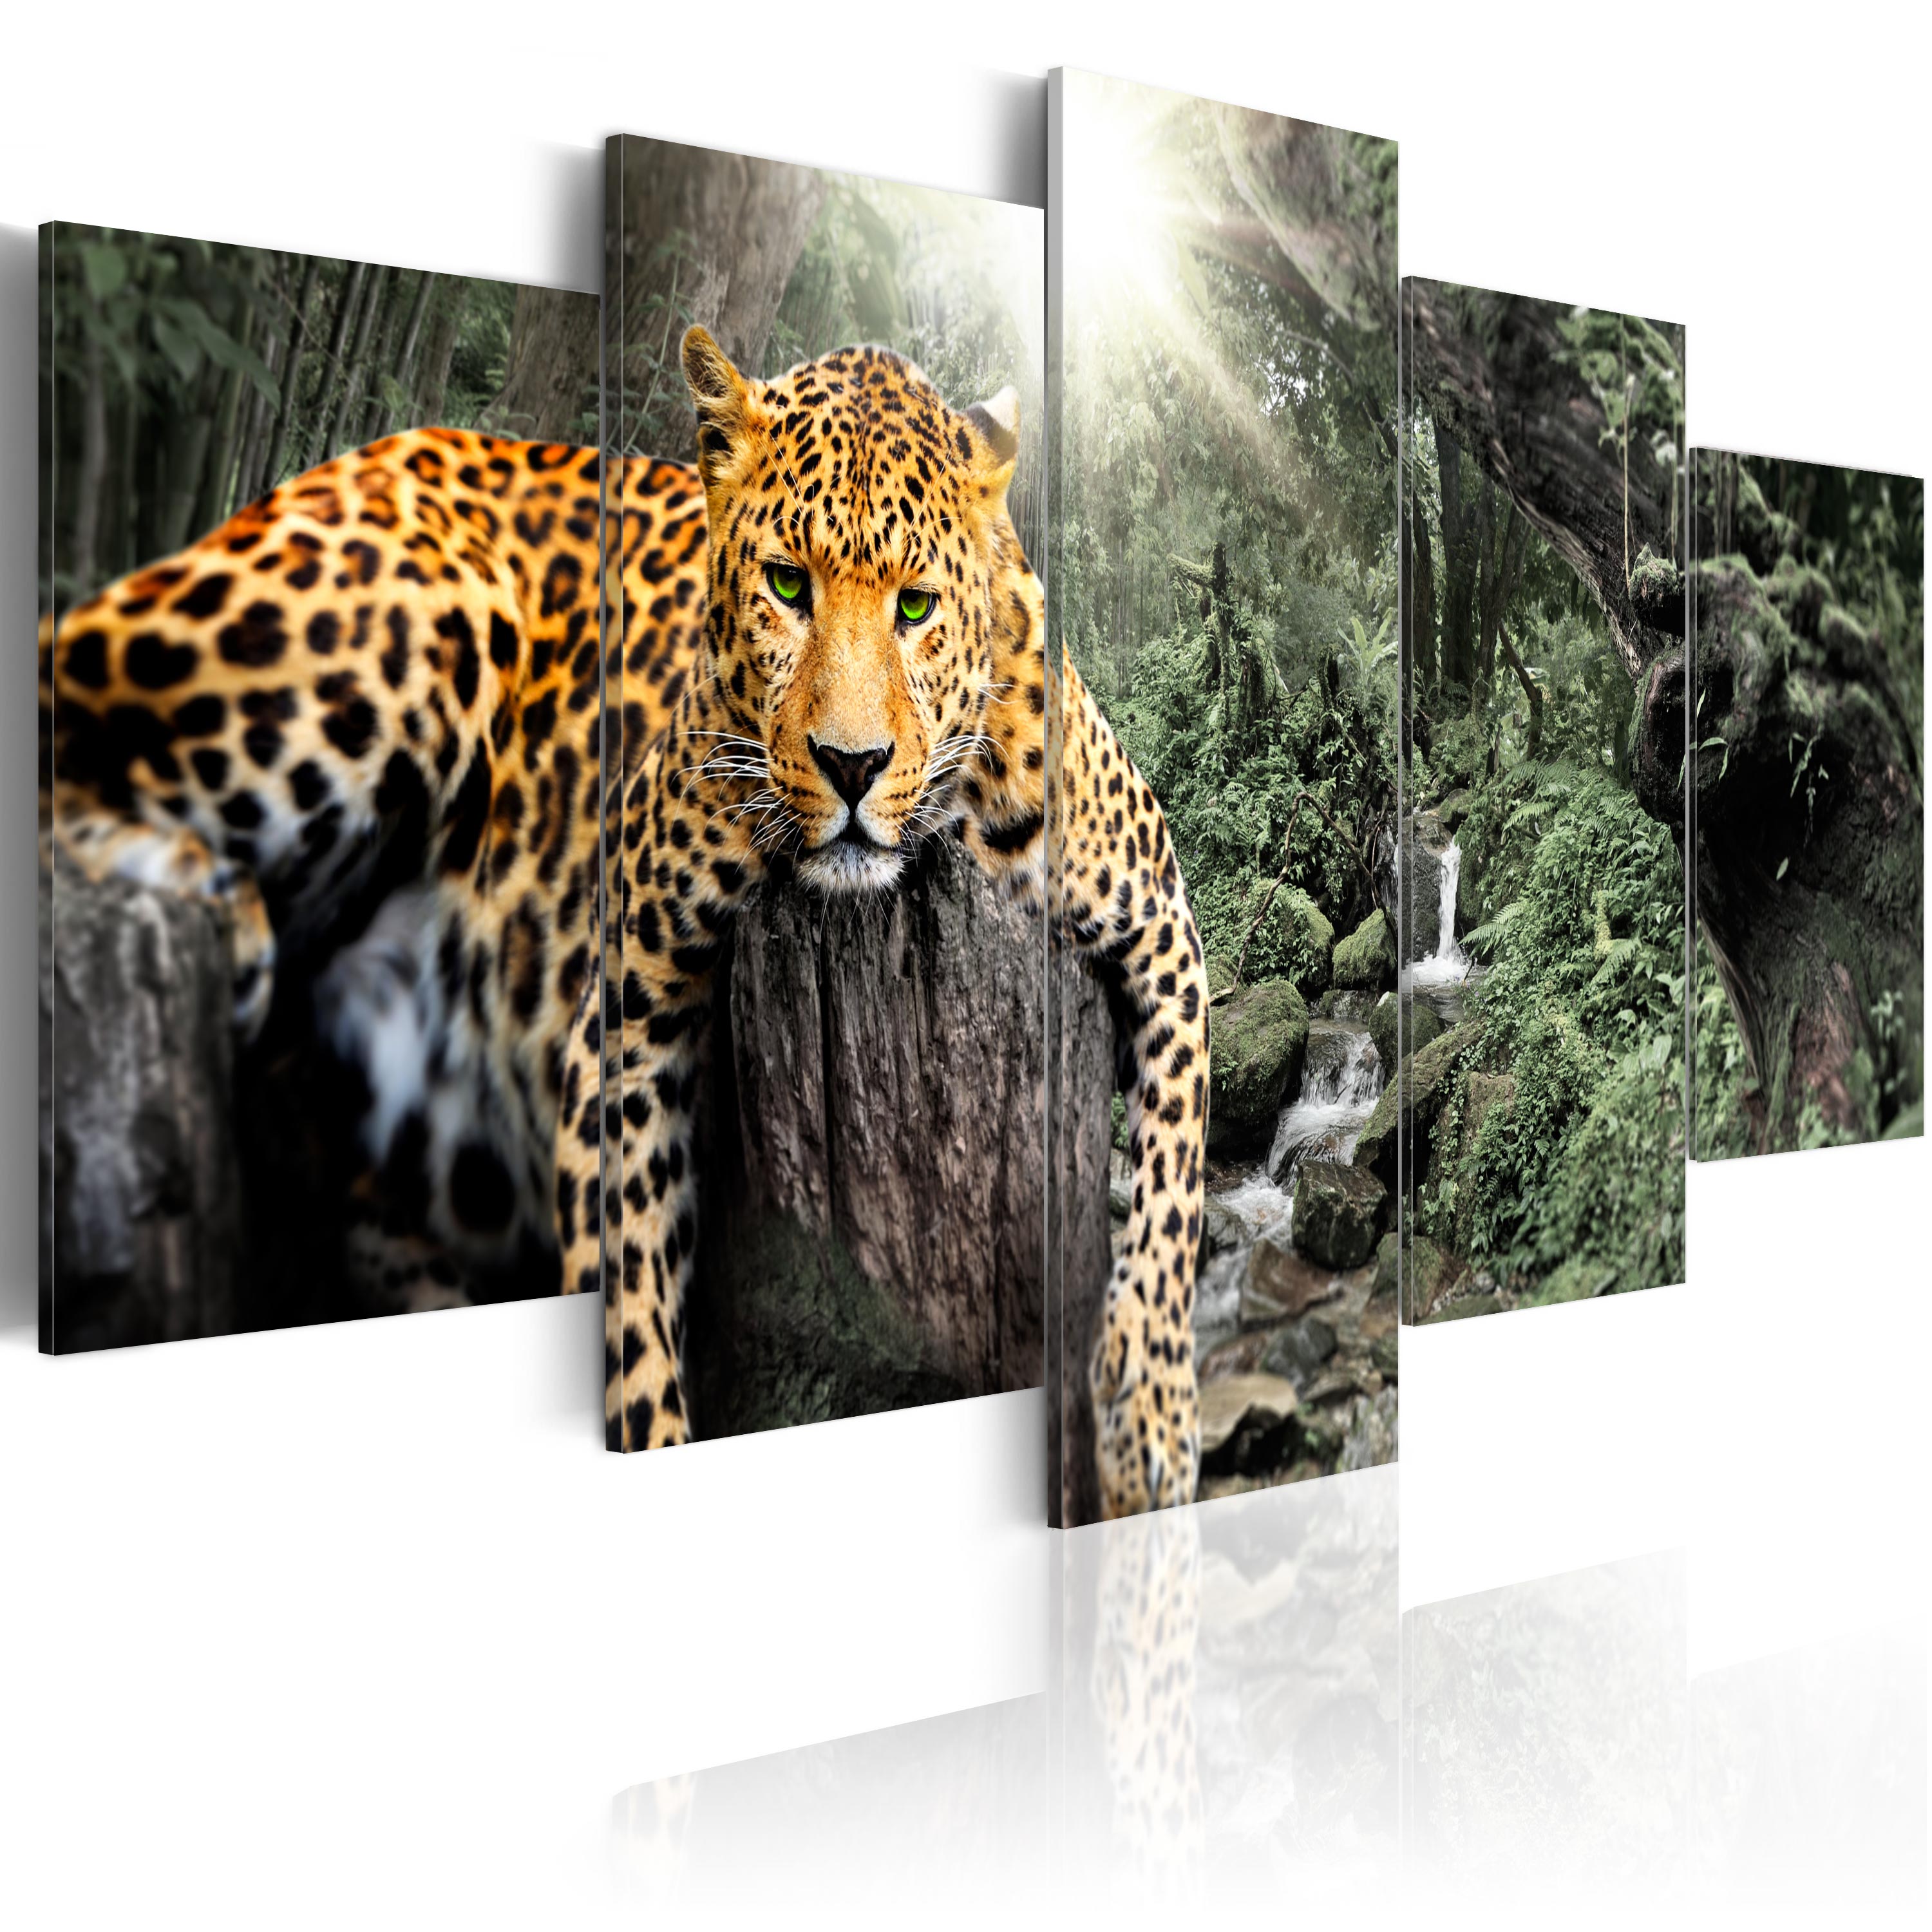 WANDBILDER XXL BILDER Afrika Leopard VLIES LEINWAND BILD KUNSTDRUCK 000314P 